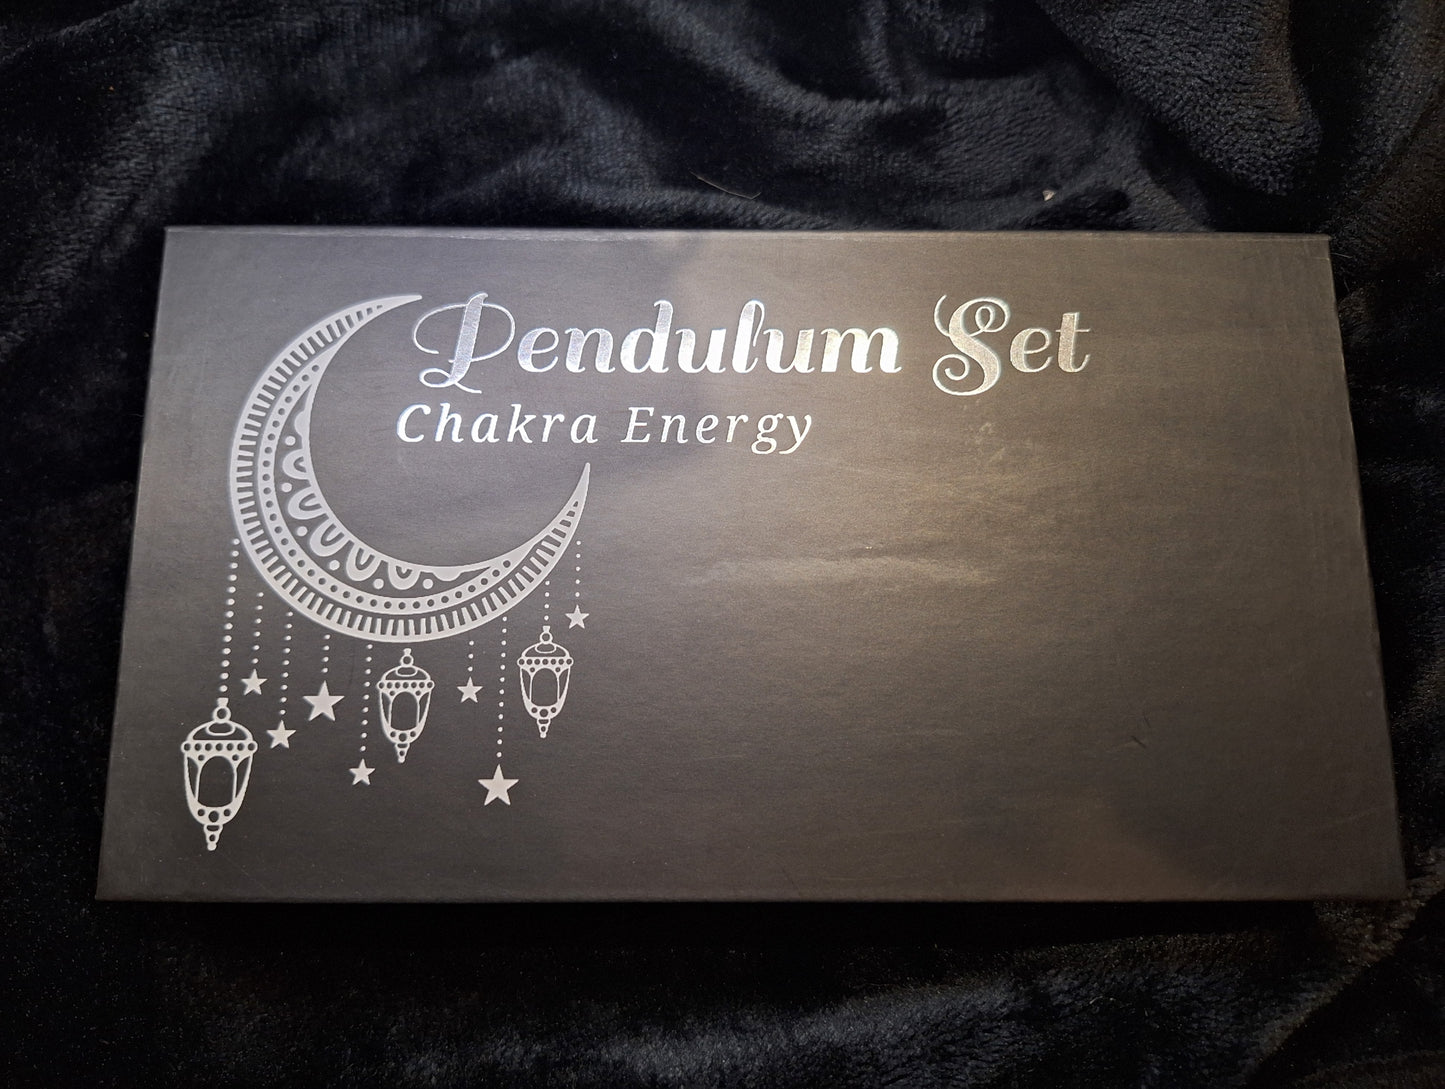 Chakra Energy Pendulum Set